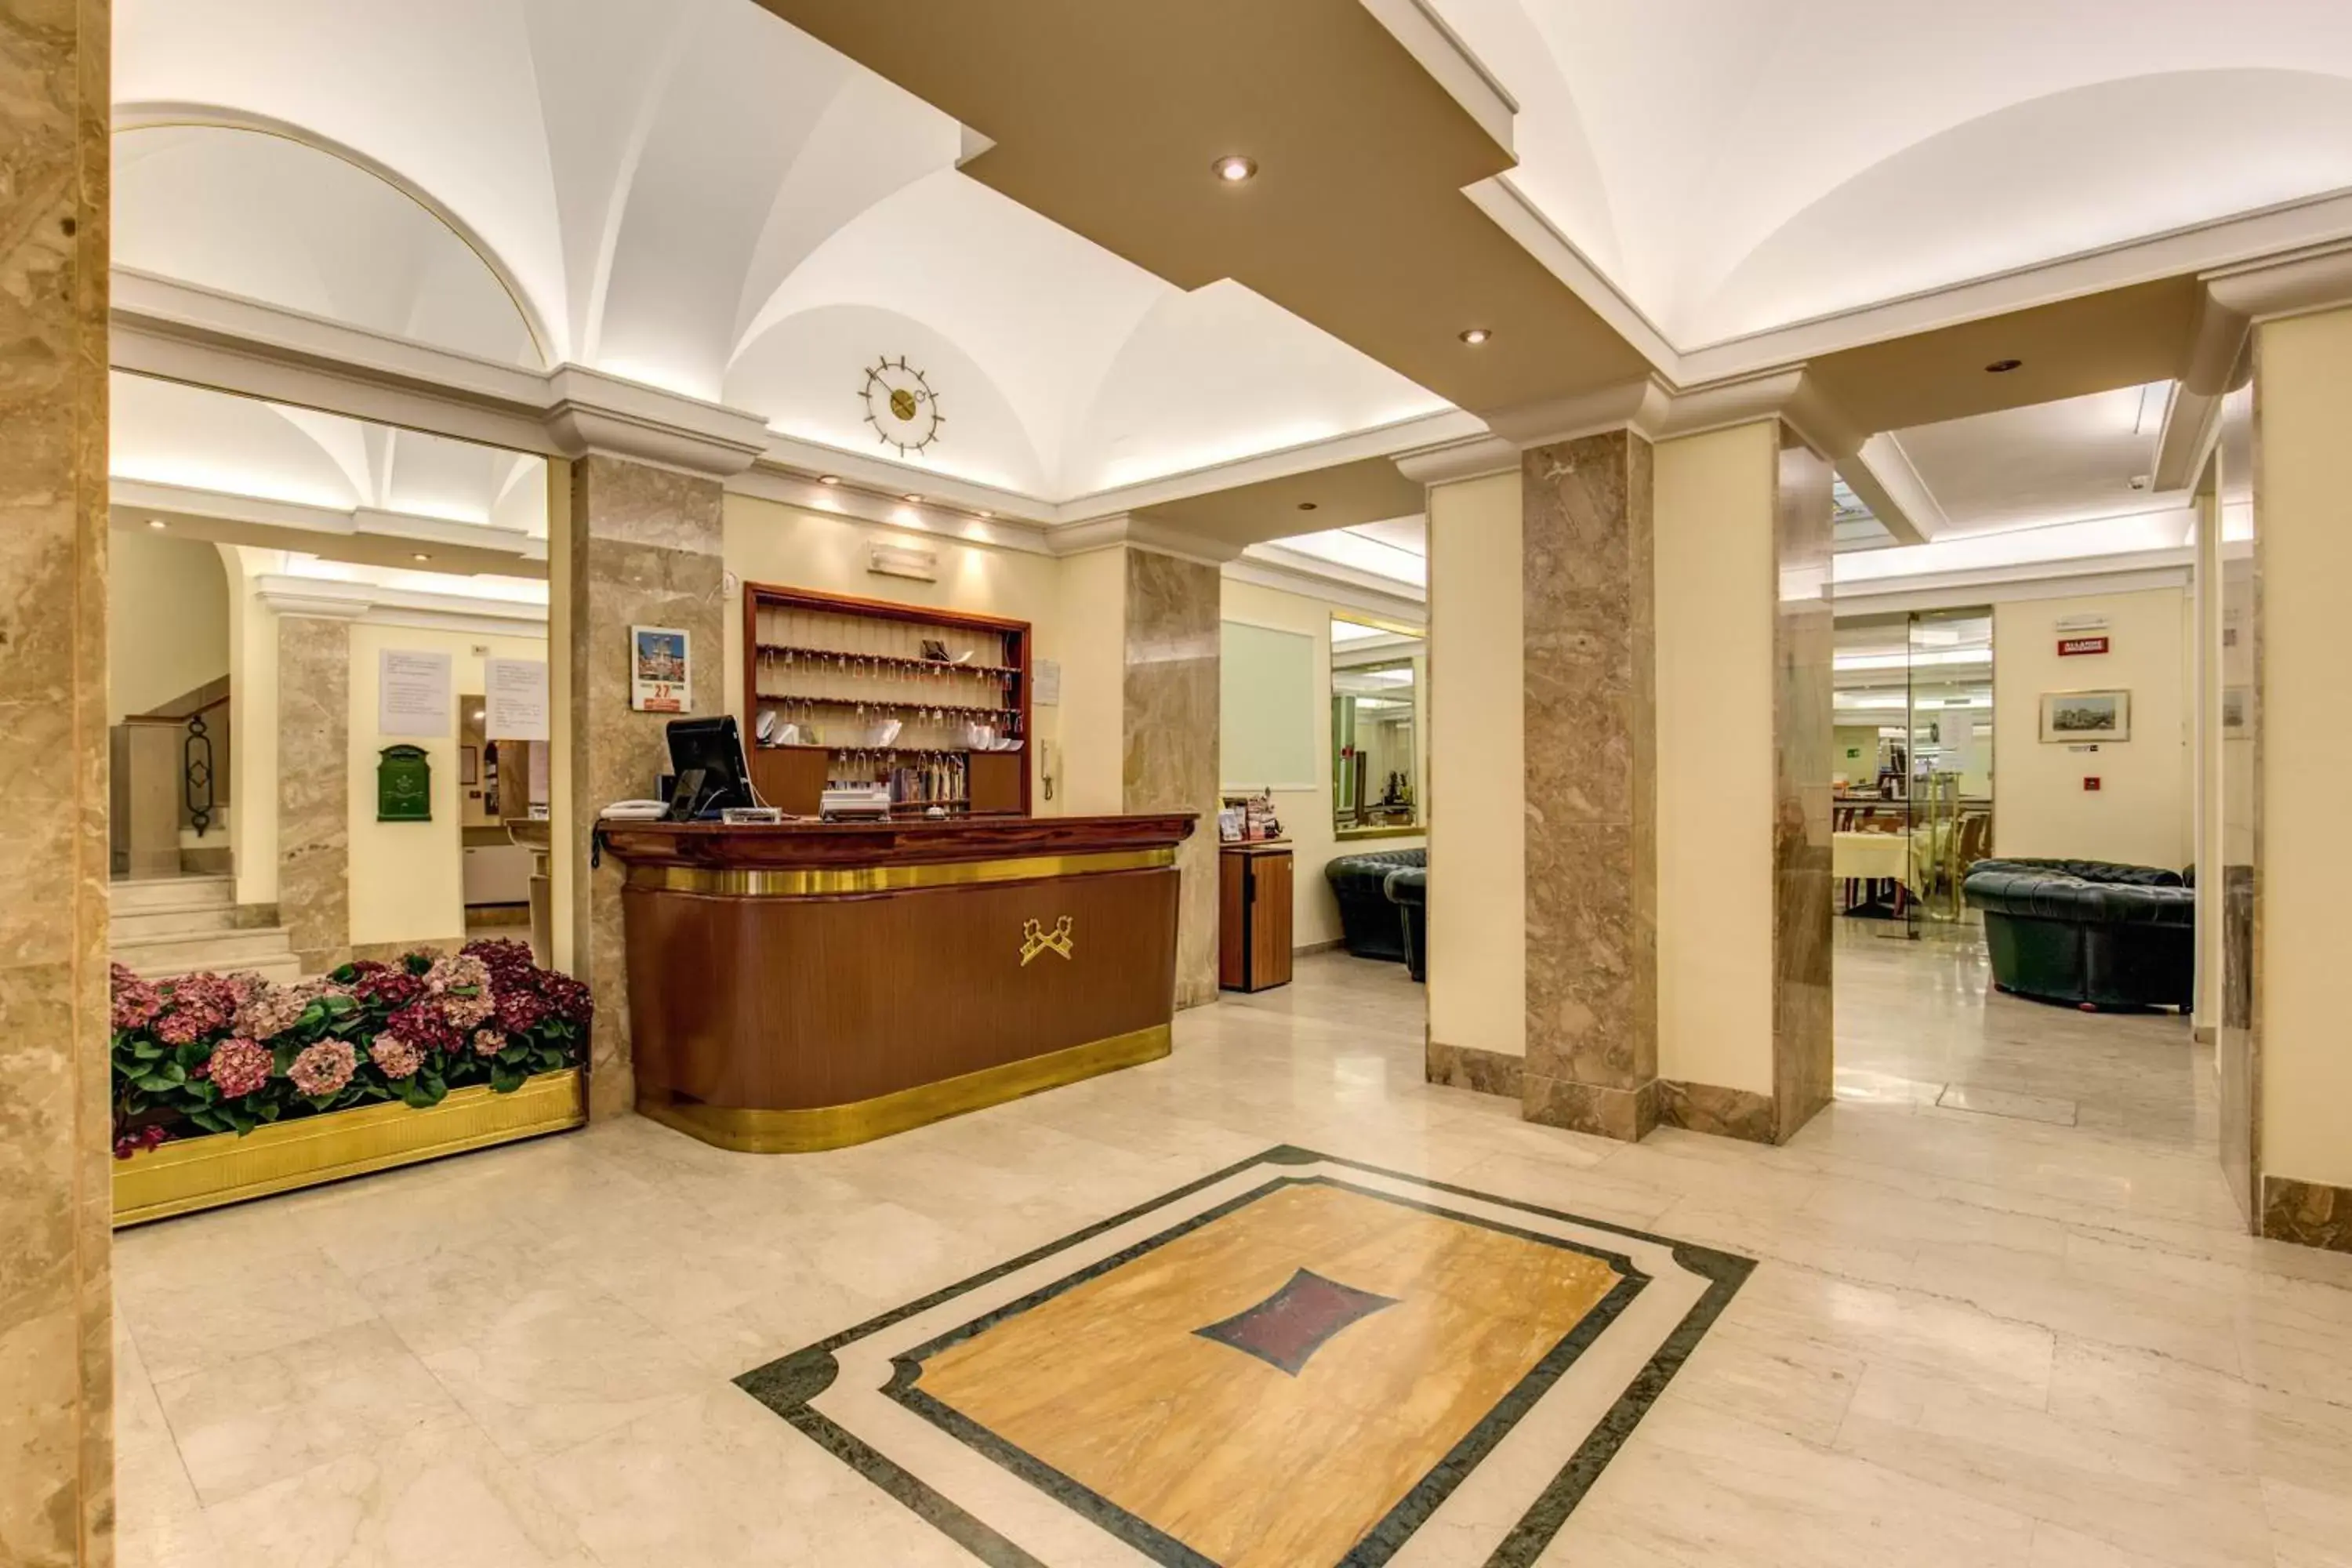 Lobby or reception, Lobby/Reception in Hotel Igea